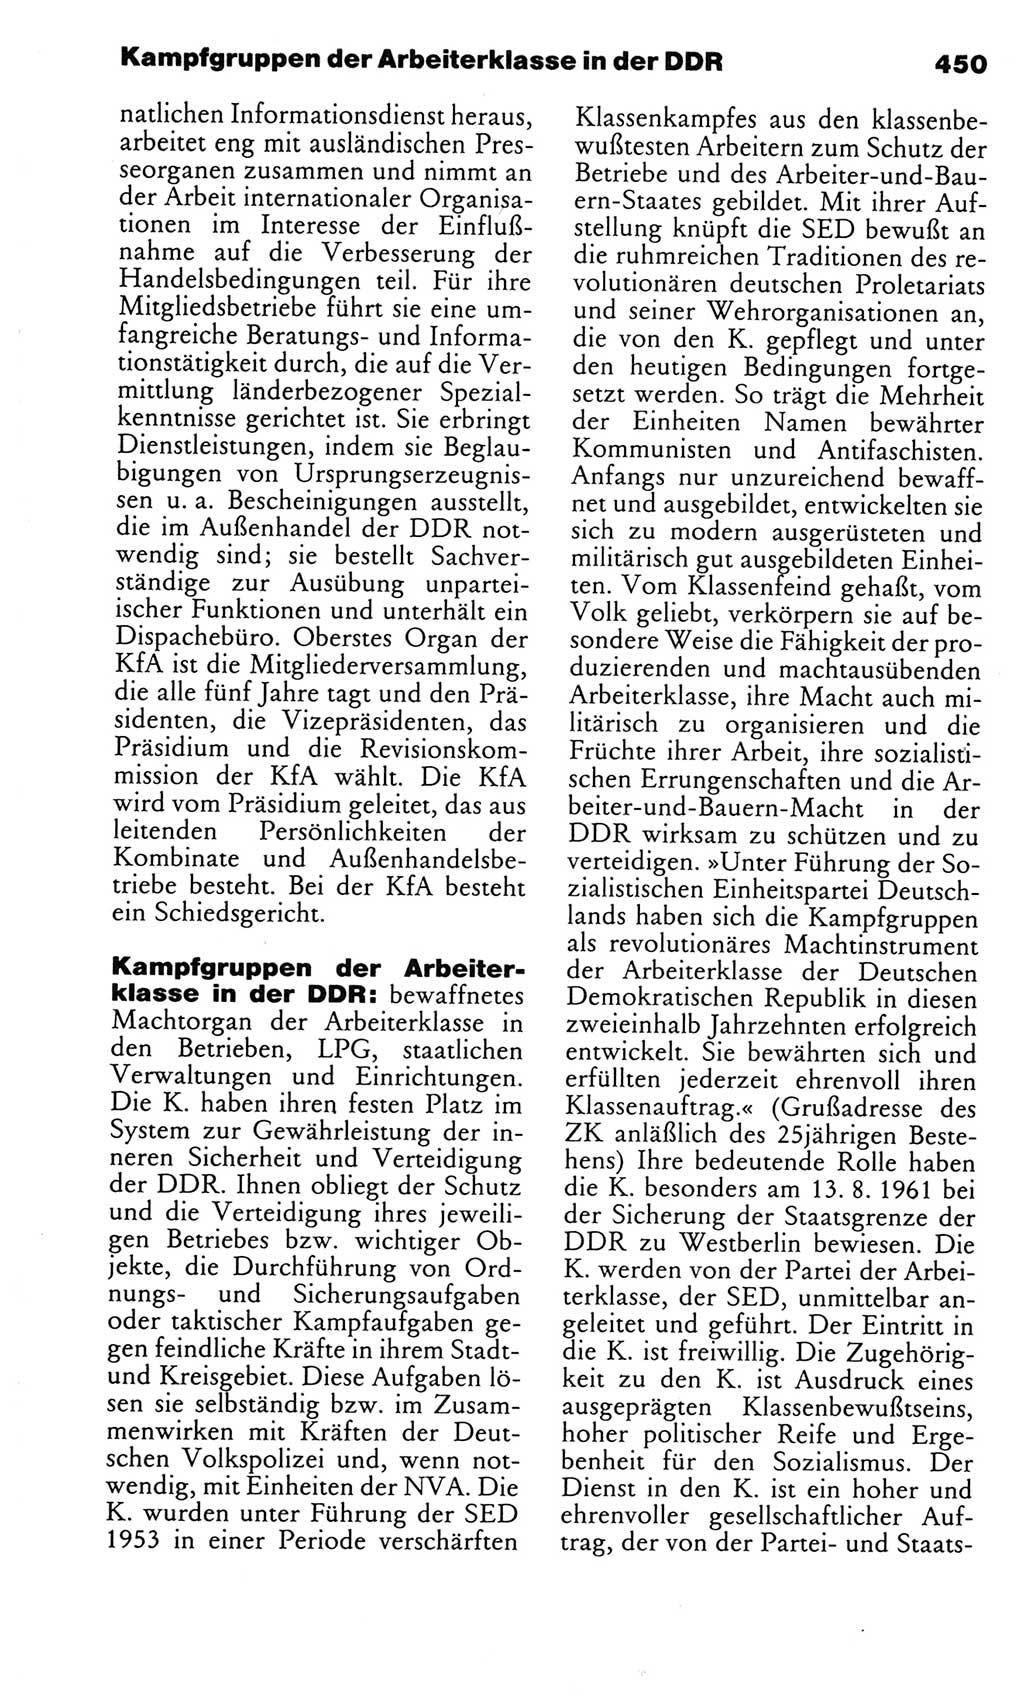 Kleines politisches Wörterbuch [Deutsche Demokratische Republik (DDR)] 1983, Seite 450 (Kl. pol. Wb. DDR 1983, S. 450)